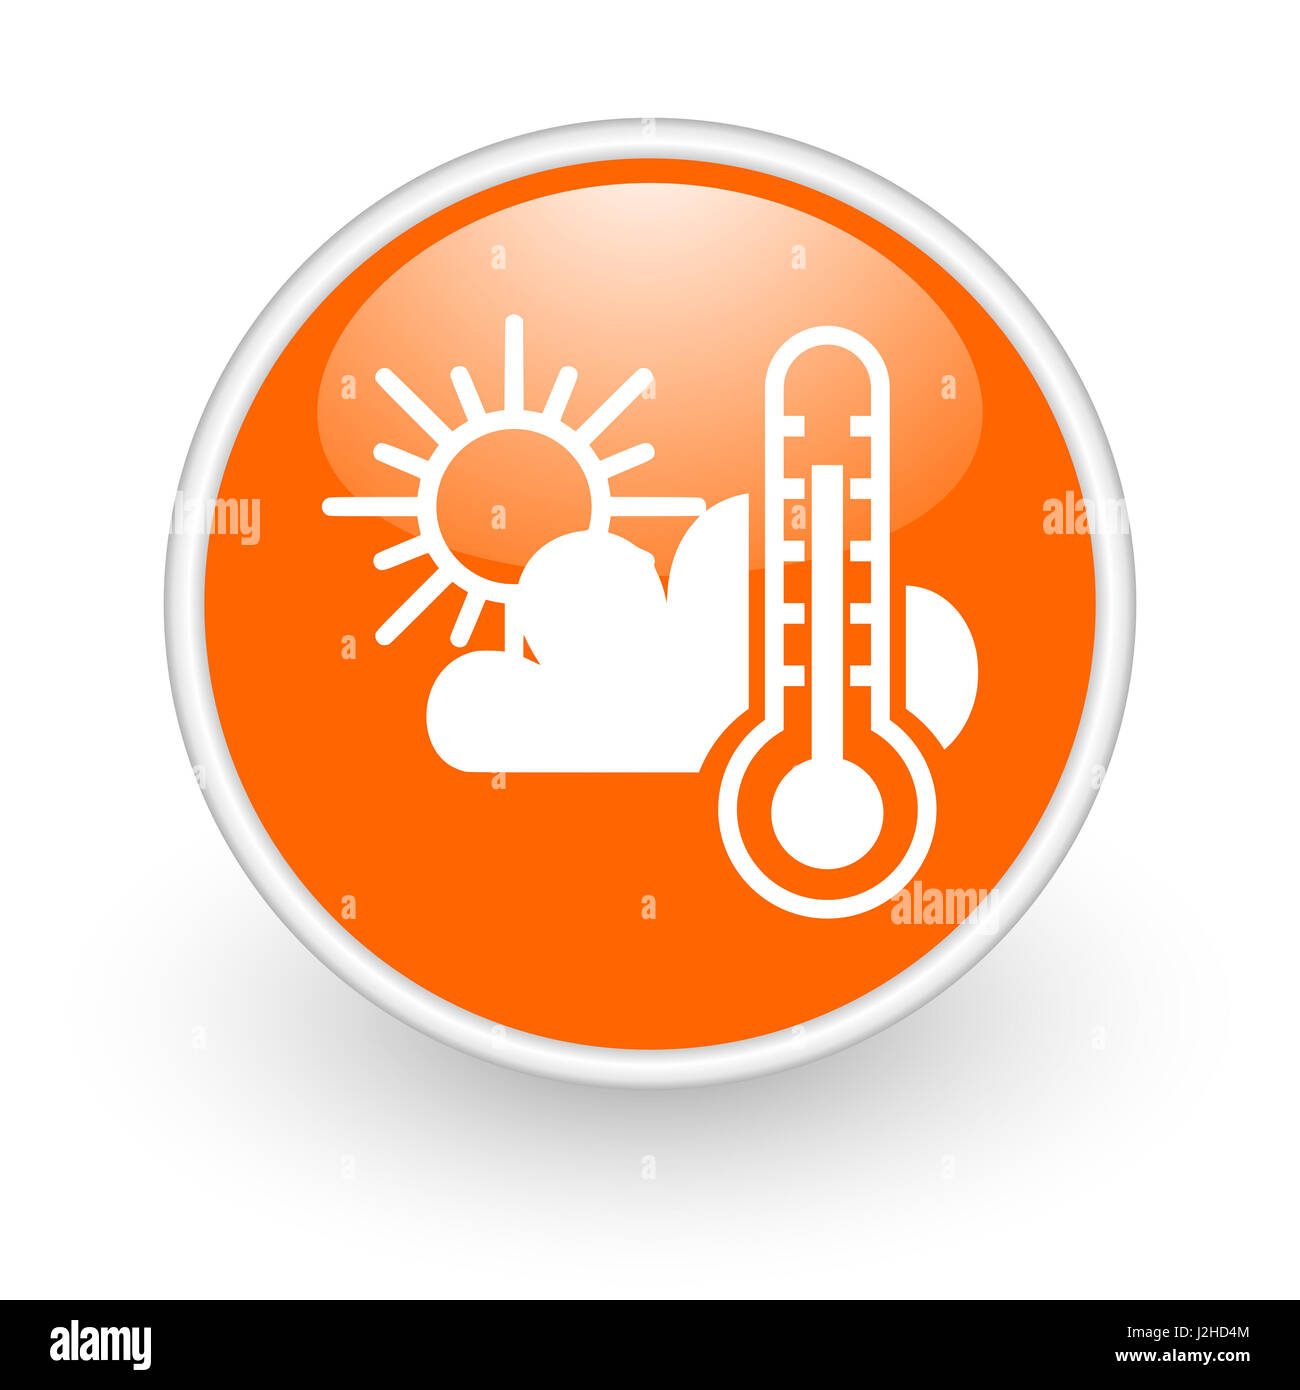 Previsioni meteo design moderno di colore arancione lucido web, icona su sfondo bianco. Foto Stock